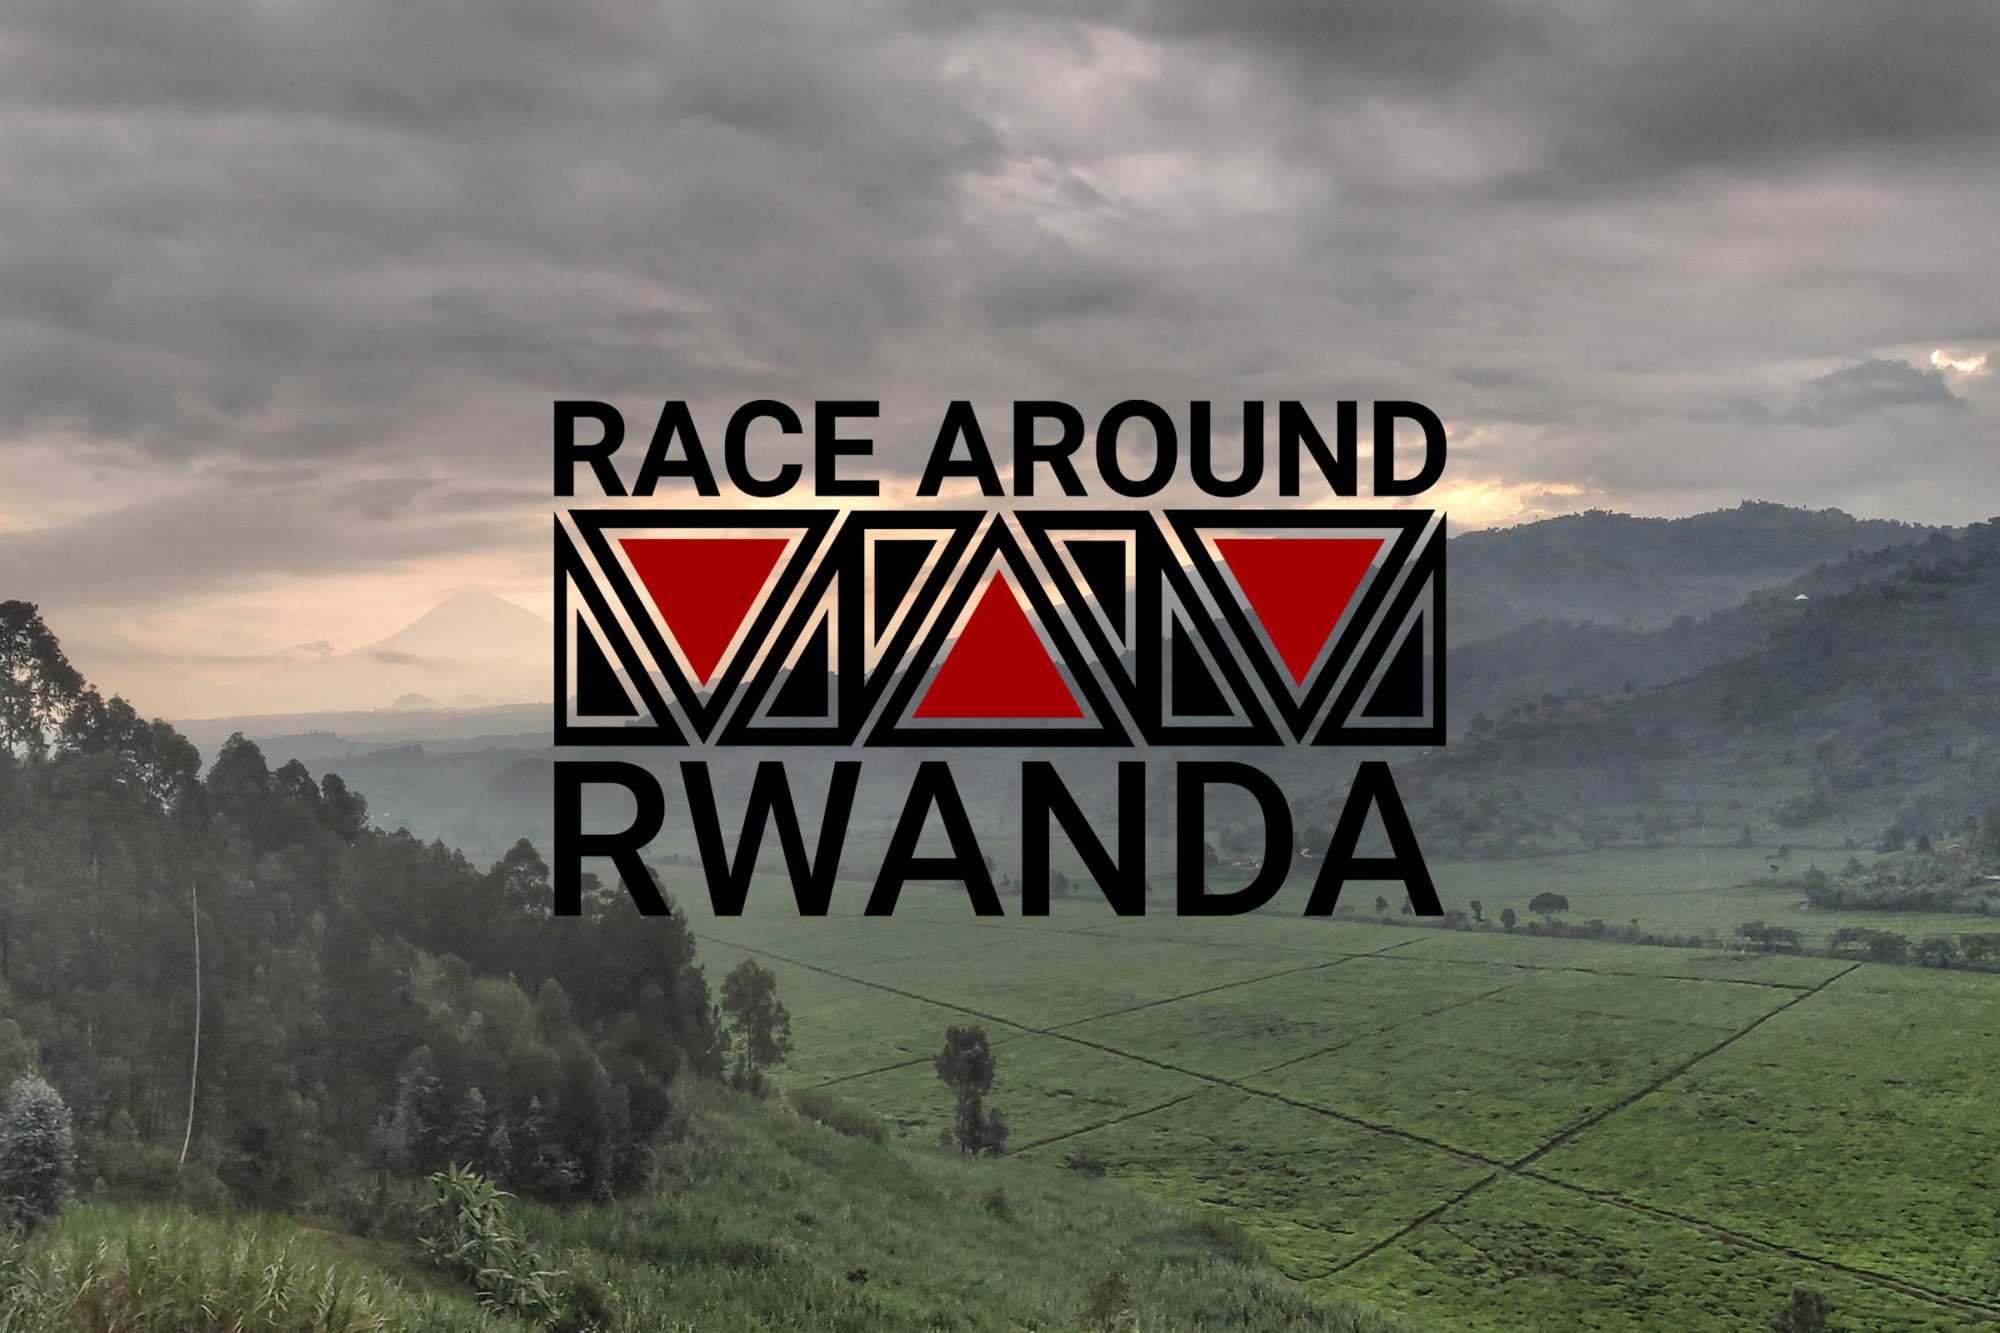 מירוץ סביב רואנדה 2020